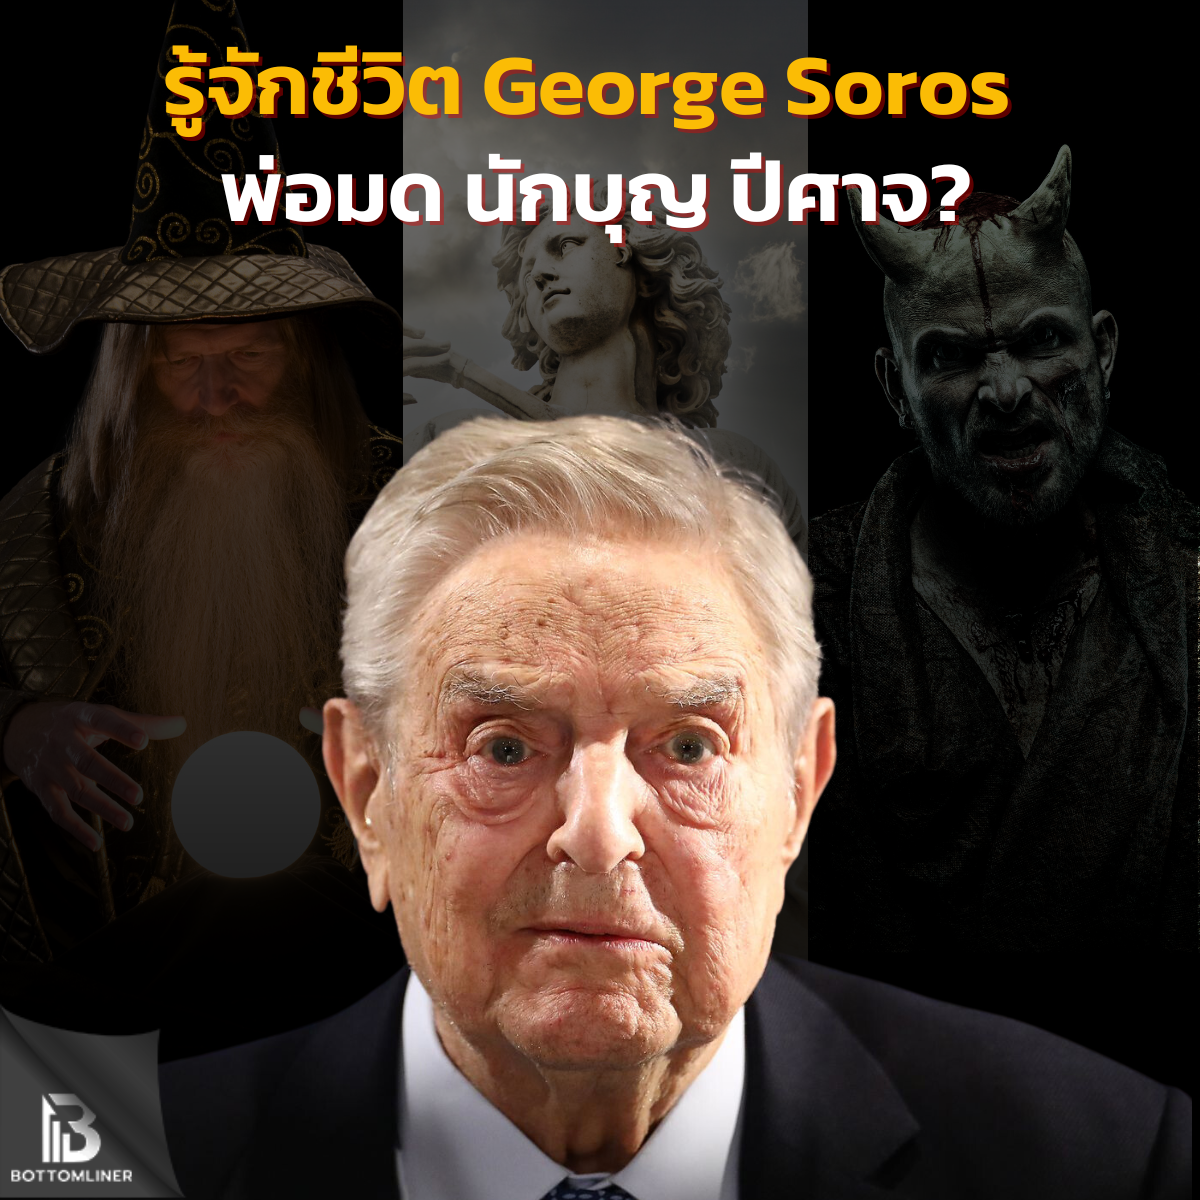 รู้จักชีวิต George Soros พ่อมด นักบุญ ปีศาจ? ในวันที่ต้องเกษียณอายุ